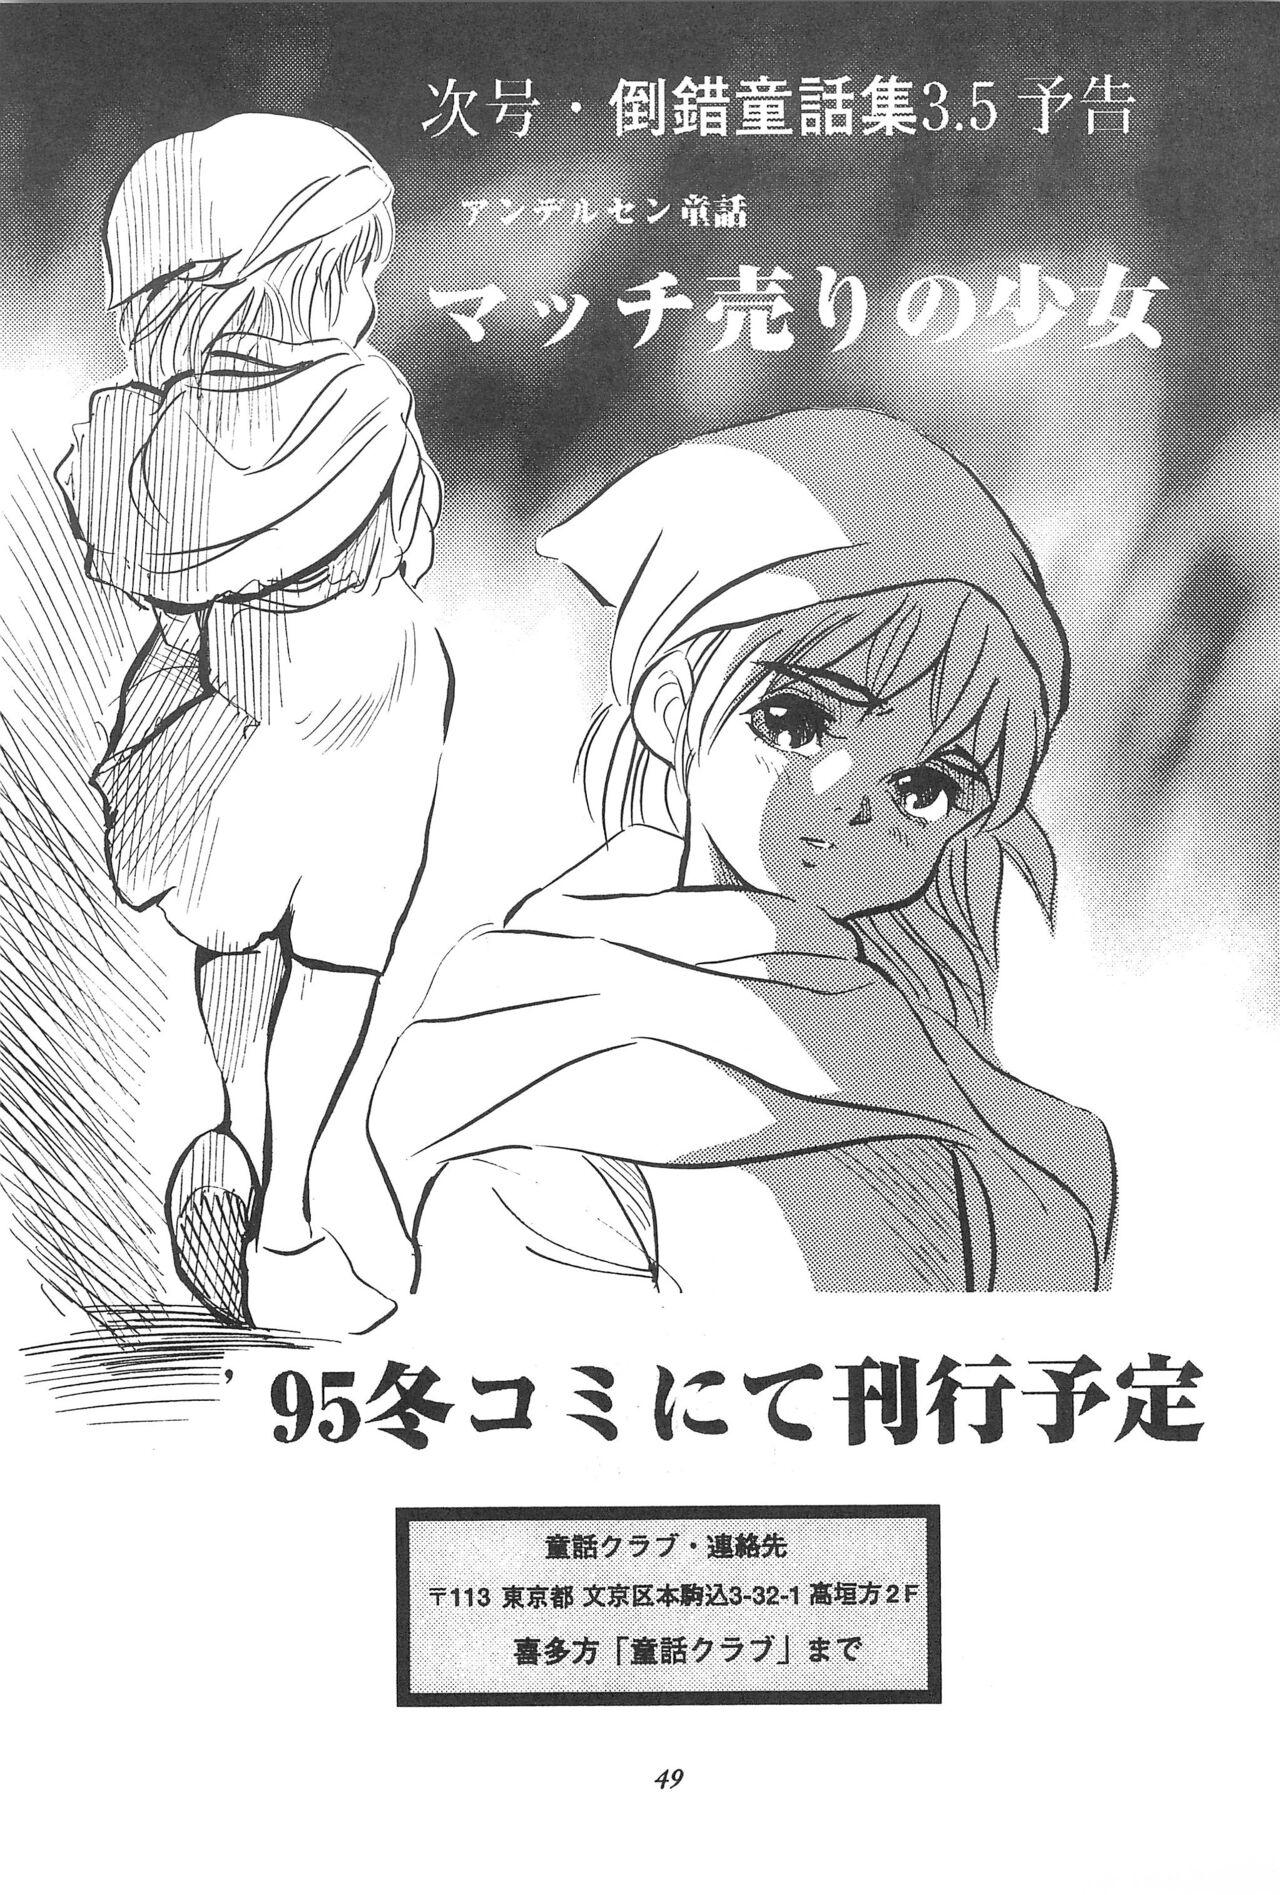 Tousaku Douwa-shuu 3.0 Cinderella 50